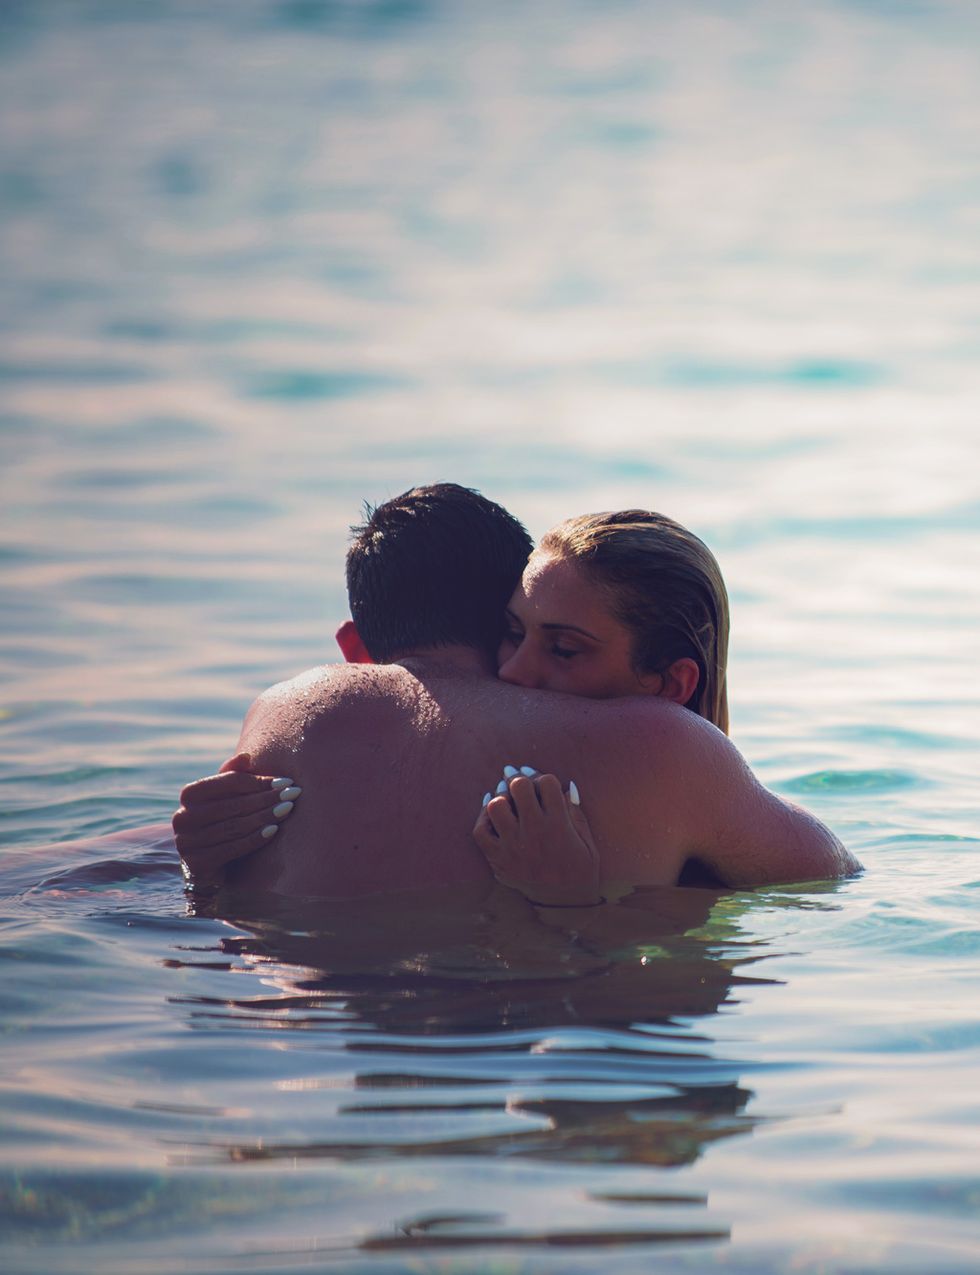 <p>El agua es un elemento refrescante que estimula y facilita las sensaciones de placer. Por eso, practicar el sexo bajo el agua del mar se convierte en una experiencia deliciosamente recomendable. Estar los dos bien mojados tiene una importante carga de erotismo.&nbsp;</p><p>&nbsp;</p>